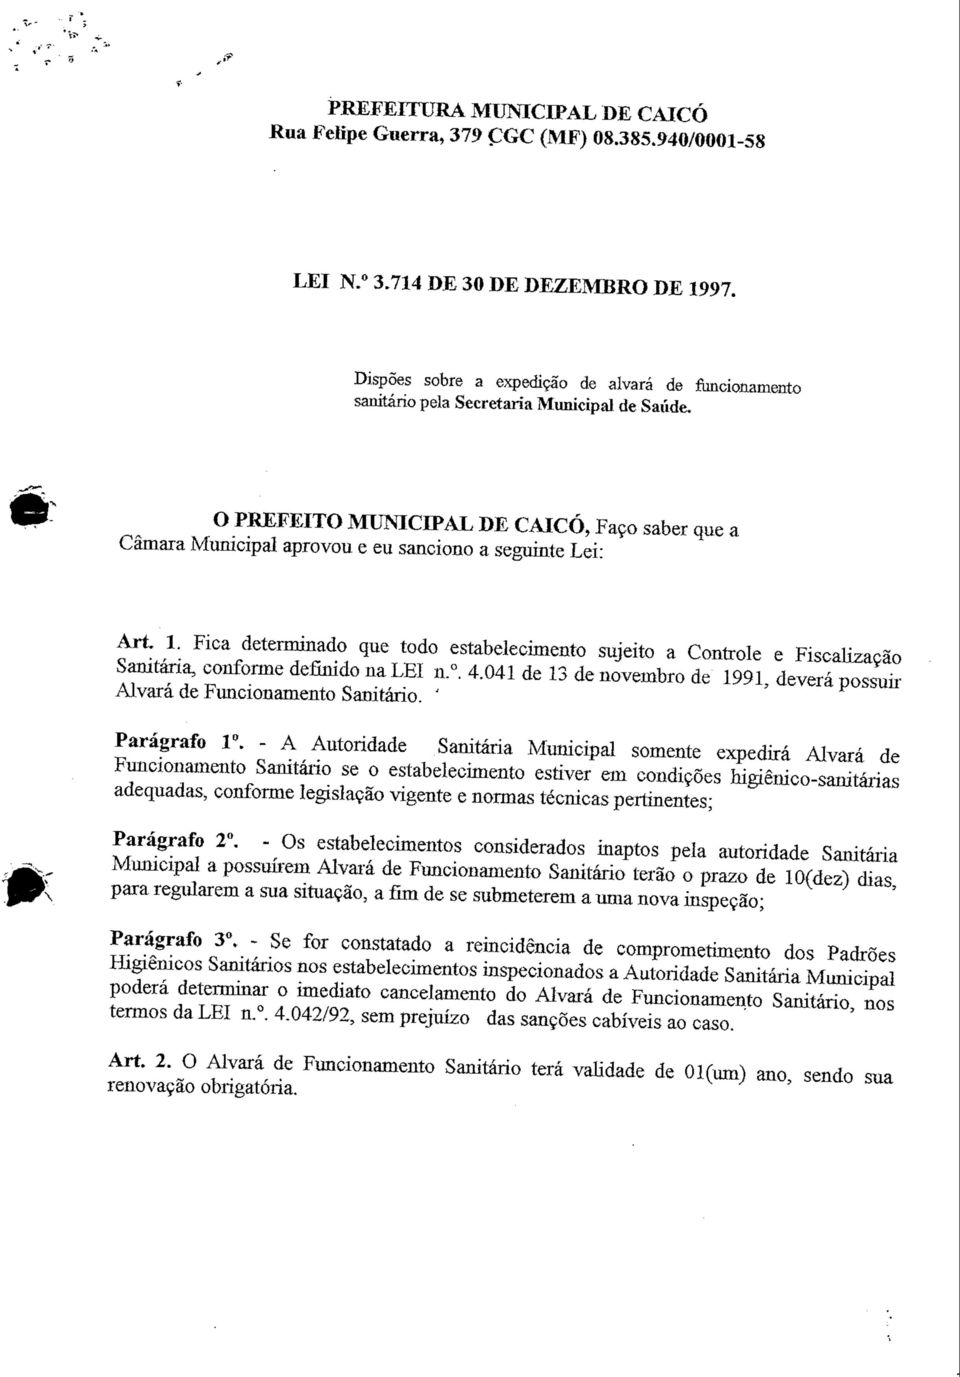 O PREFEITO MUNICIPAL DE CAICÓ, Faço saber que a Câmara Municipal aprovou e eu sanciono a seguinte Lei: Art. 1.